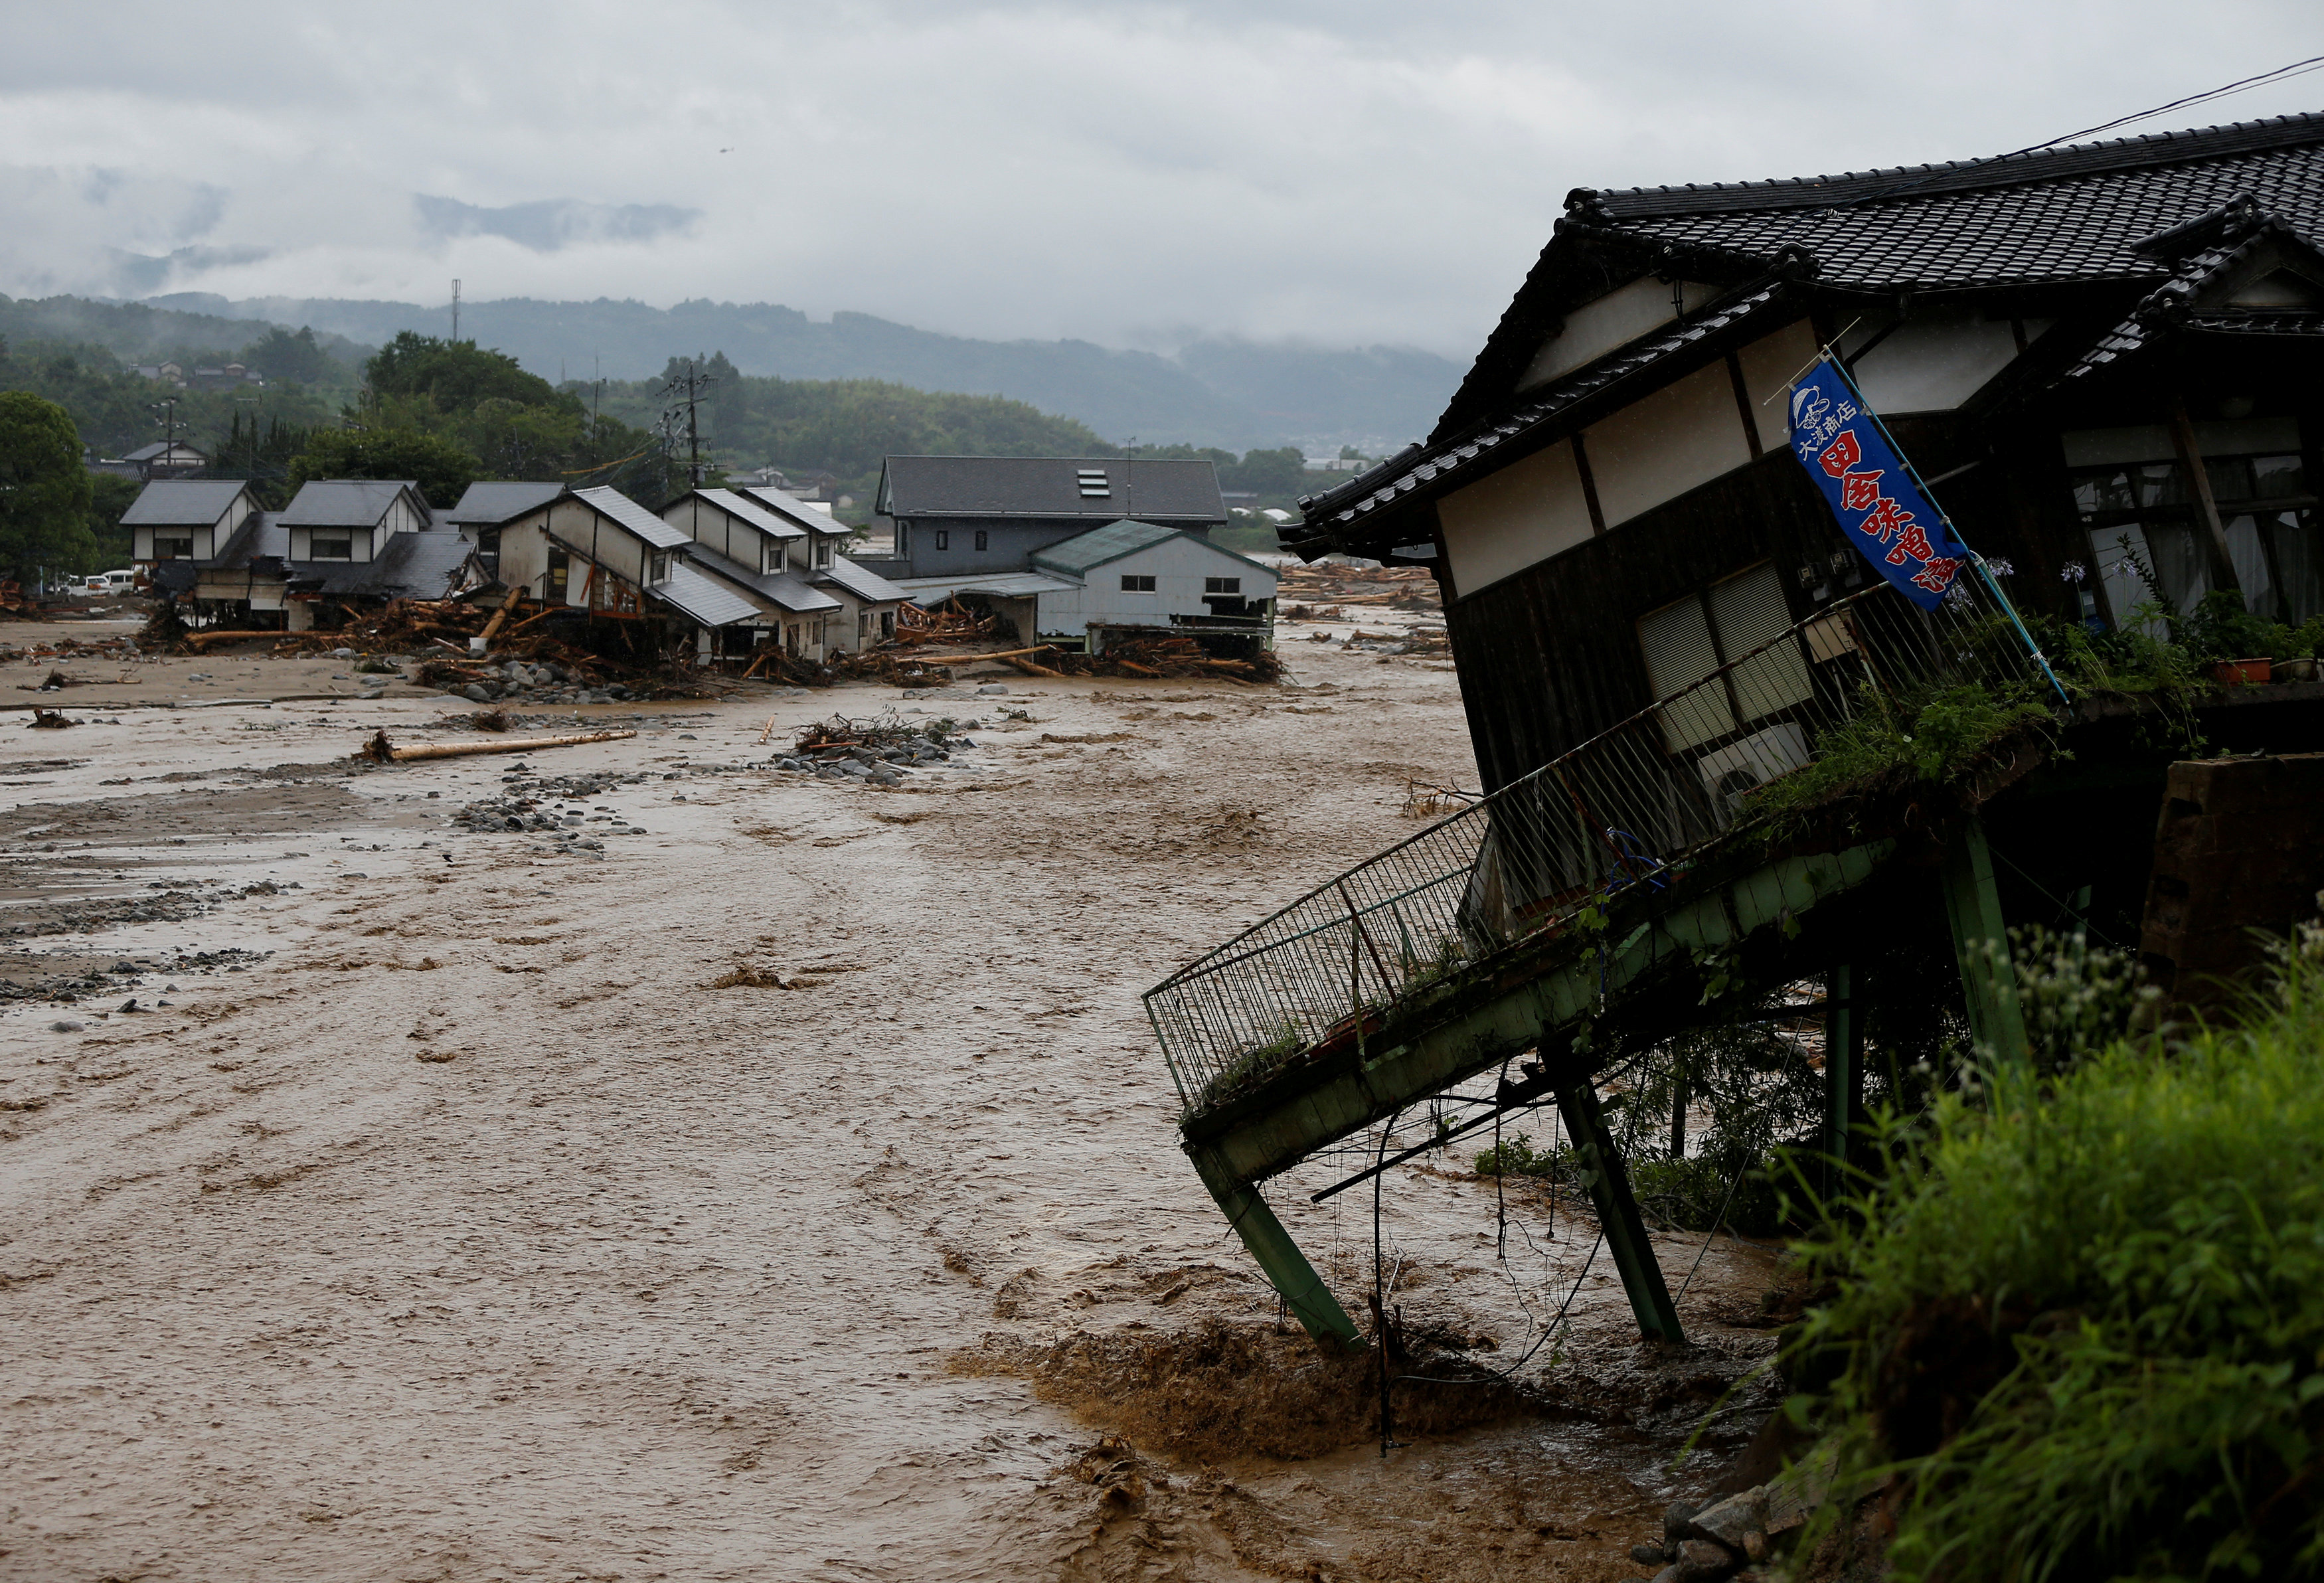 المياه الغزيرة تدمر عدة منازل فى اليابان (1)